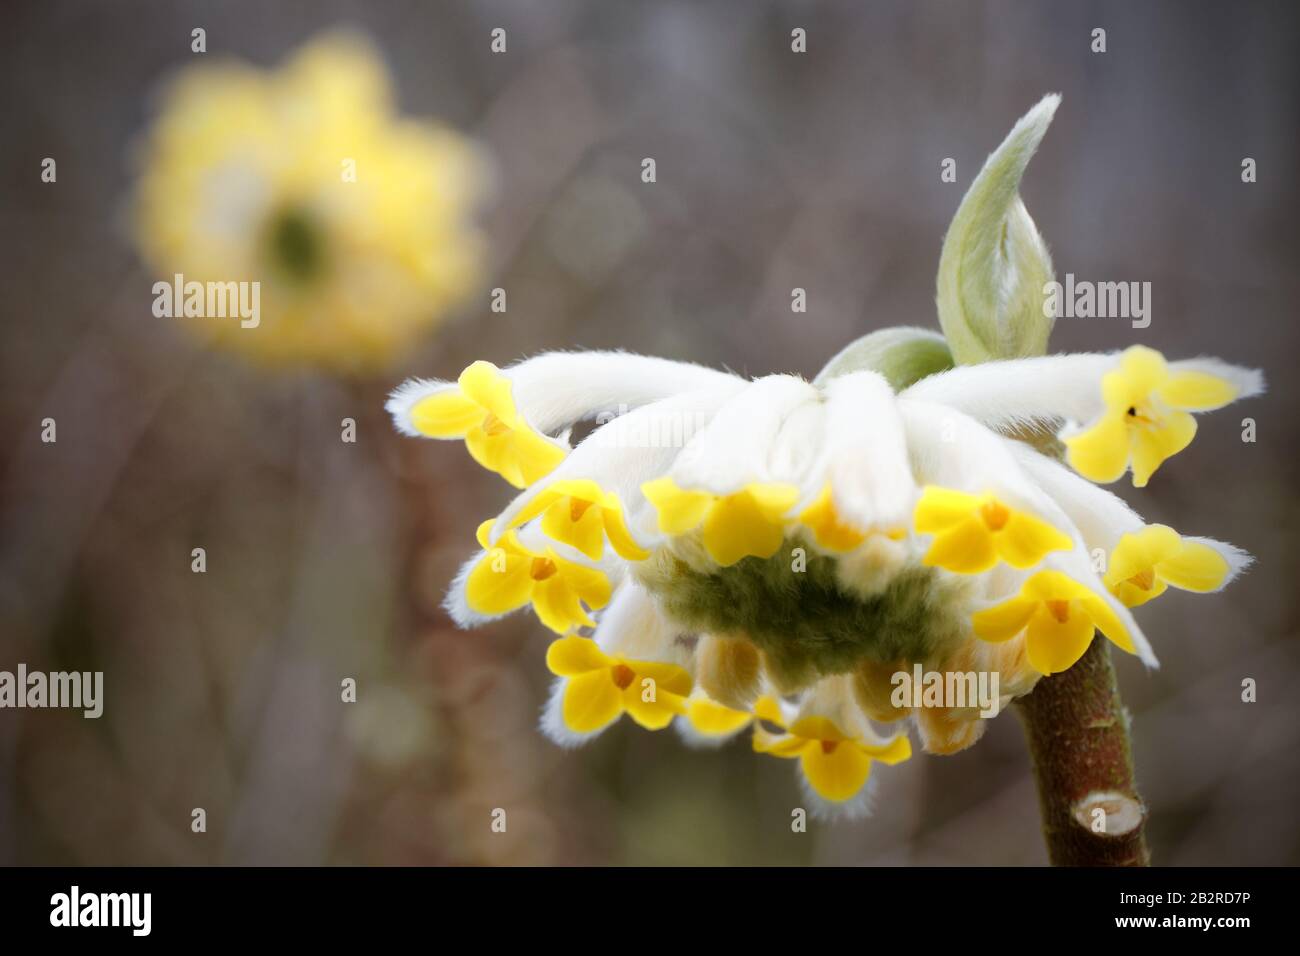 Edgeworthia chrysantha close up Stock Photo